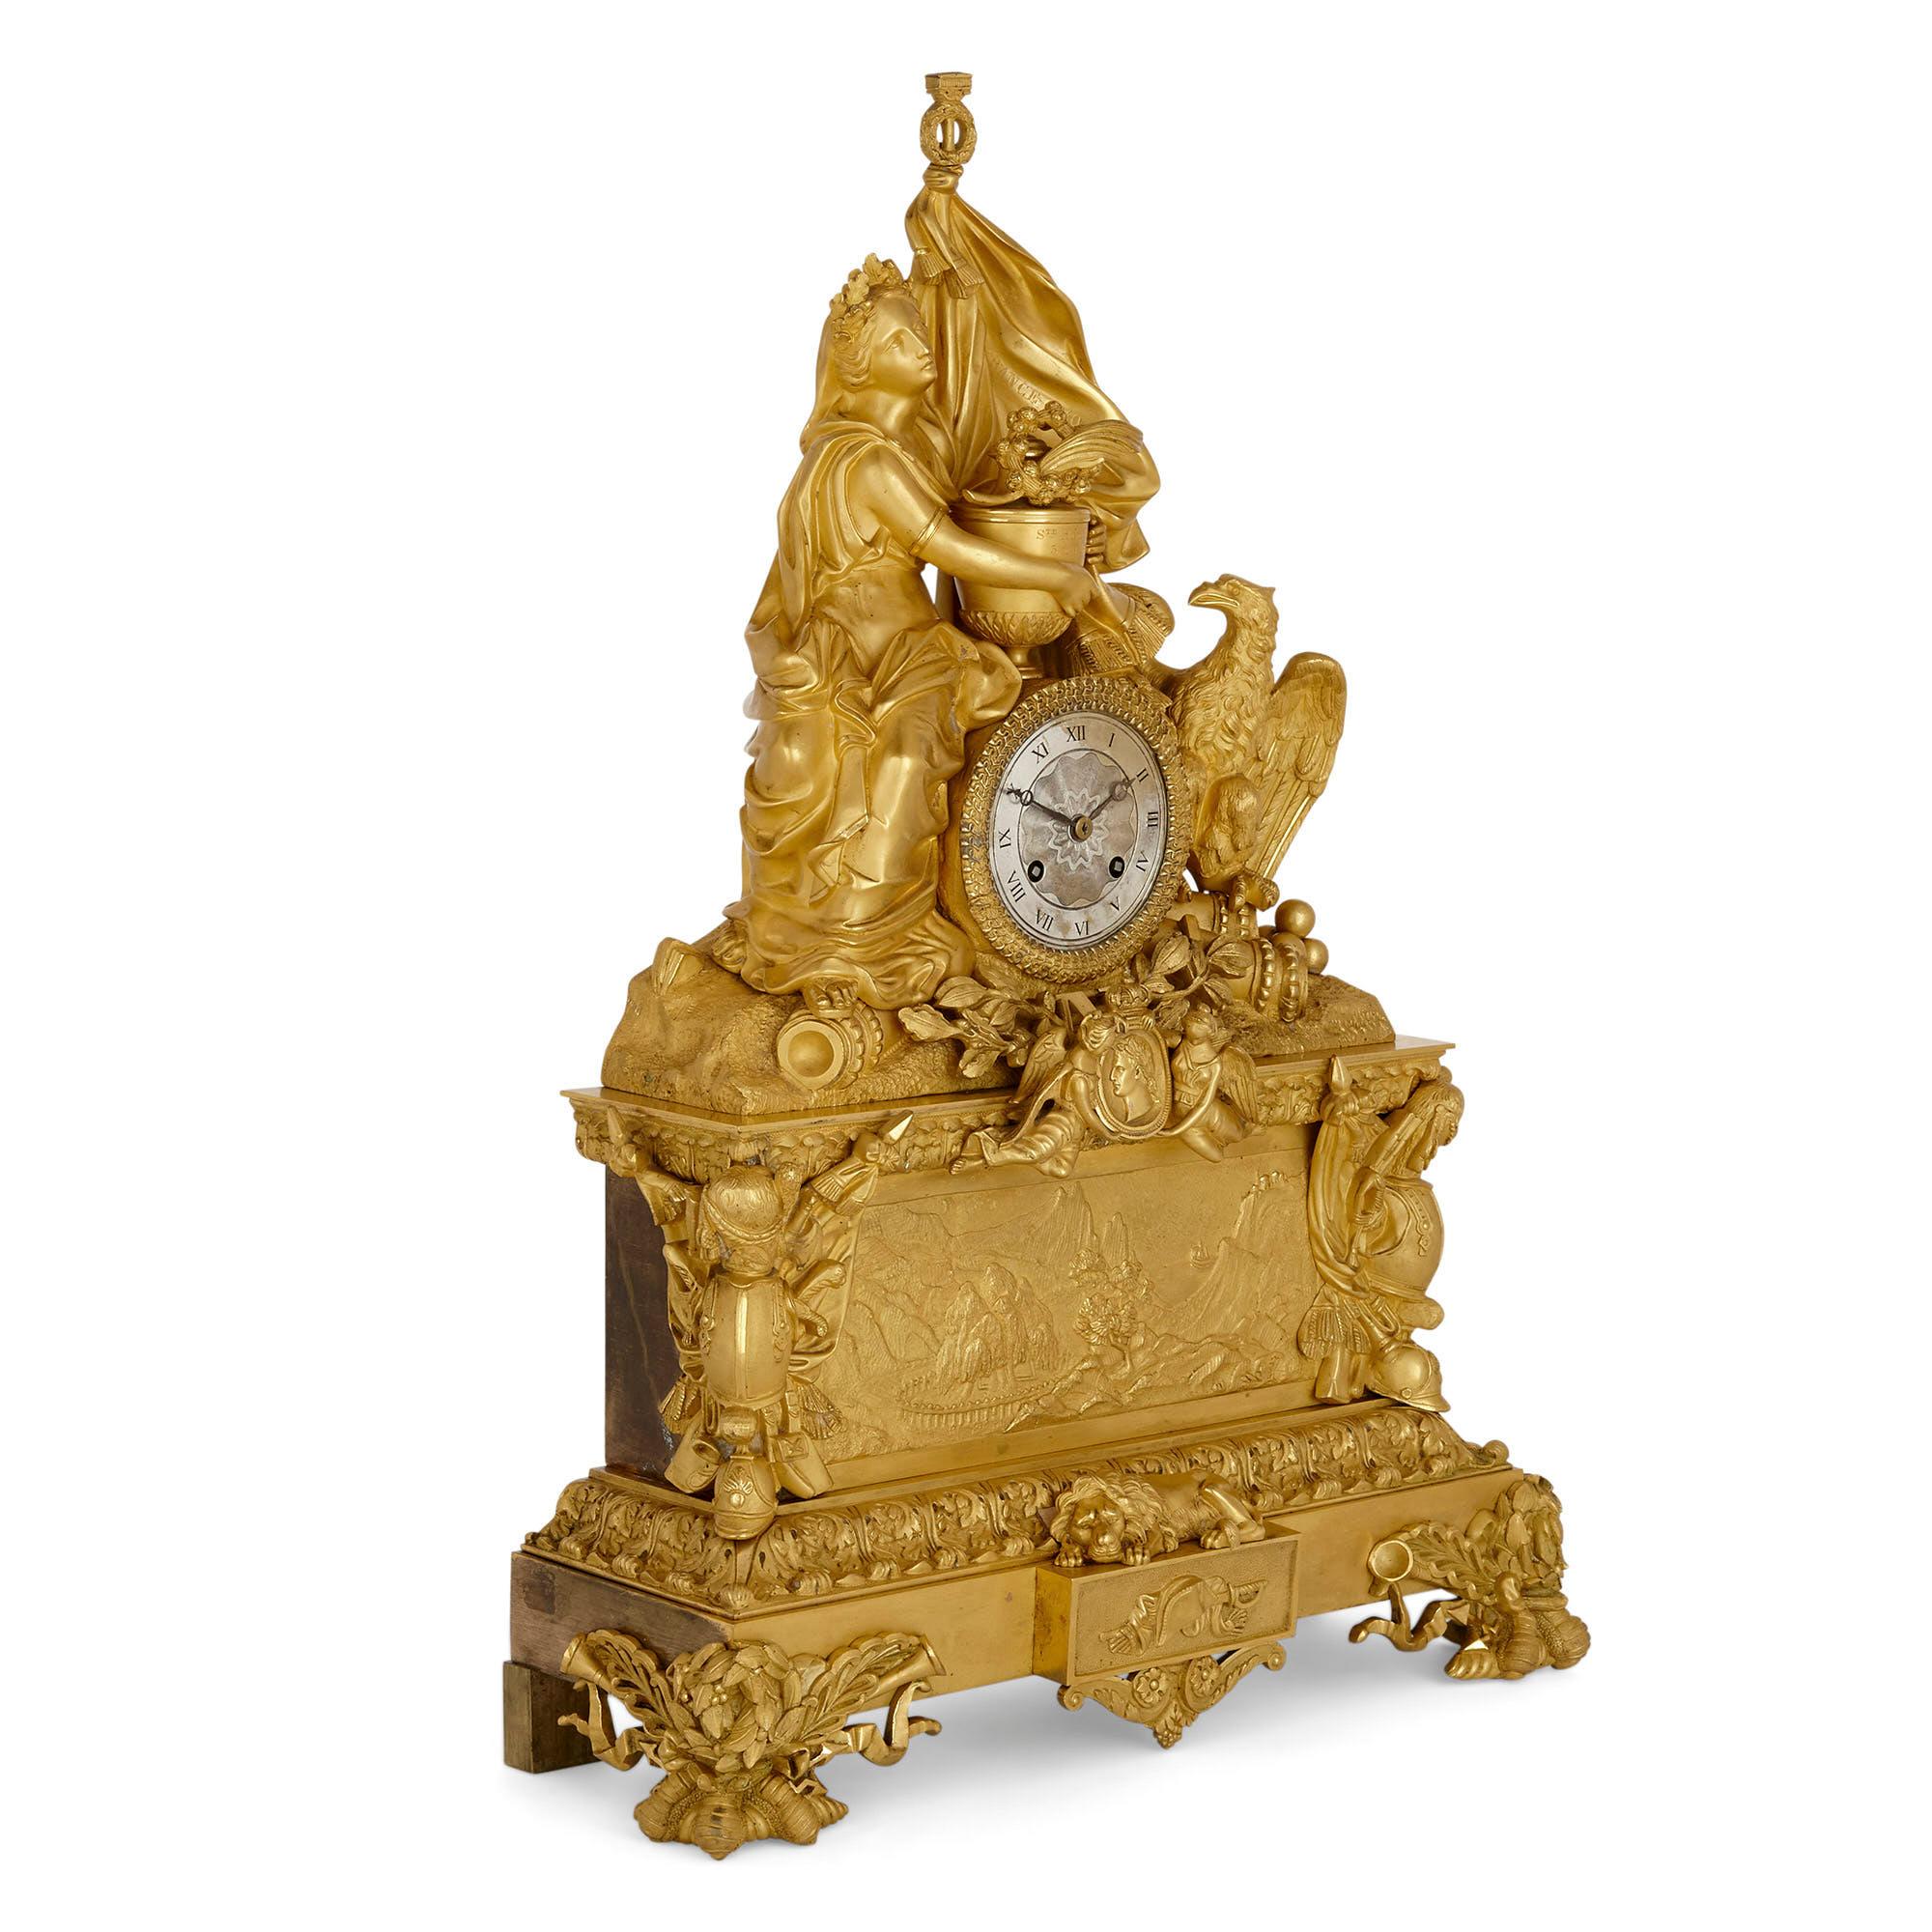 Große vergoldete Bronze-Kaminuhr zum Gedenken an Napoleon
Französisch, um 1840
Maße: Höhe 57cm, Breite 40cm, Tiefe 15cm

Die Kaminsimsuhr aus vergoldeter Bronze steht auf einem rechteckigen, gestuften Sockel mit vier Zierfüßen. Die untere Etage